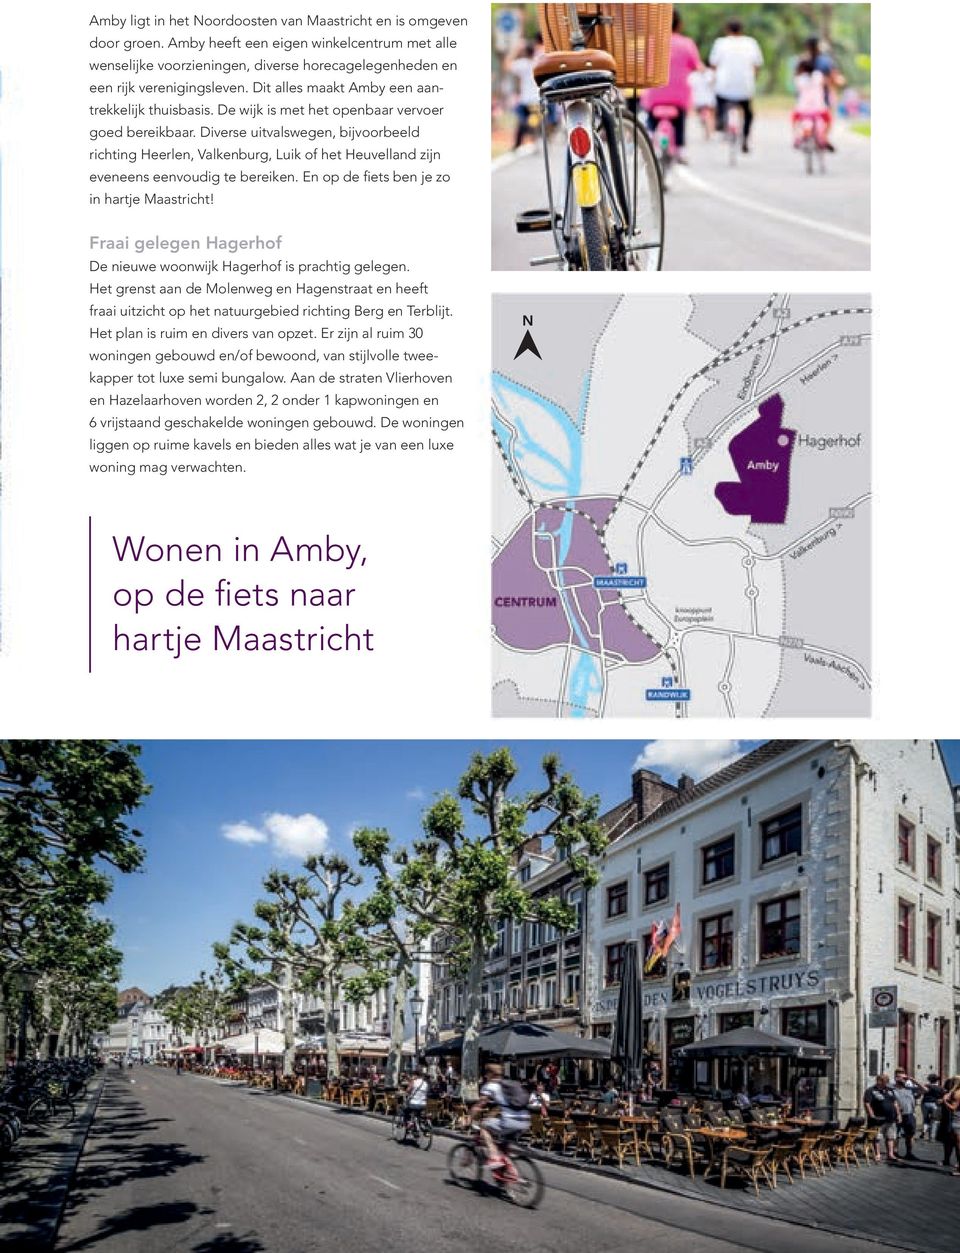 Diverse uitvalswegen, bijvoorbeeld richting Heerlen, Valkenburg, Luik of het Heuvelland zijn eveneens eenvoudig te bereiken. En op de fiets ben je zo in hartje Maastricht!